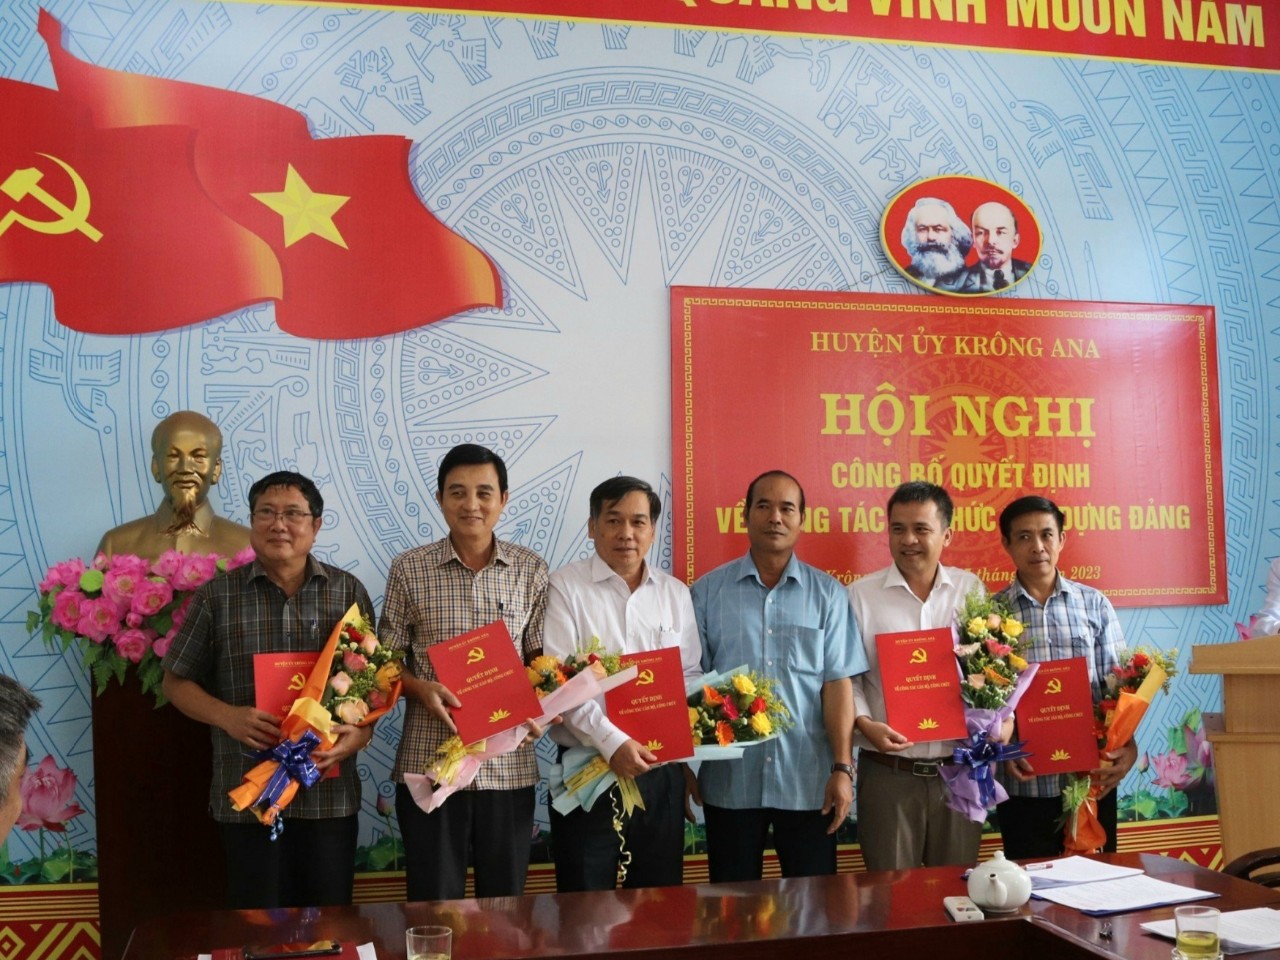 Huyện uỷ Krông Ana công bố Quyết định giải thể, thành lập tổ chức cơ sở Đảng trực thuộc